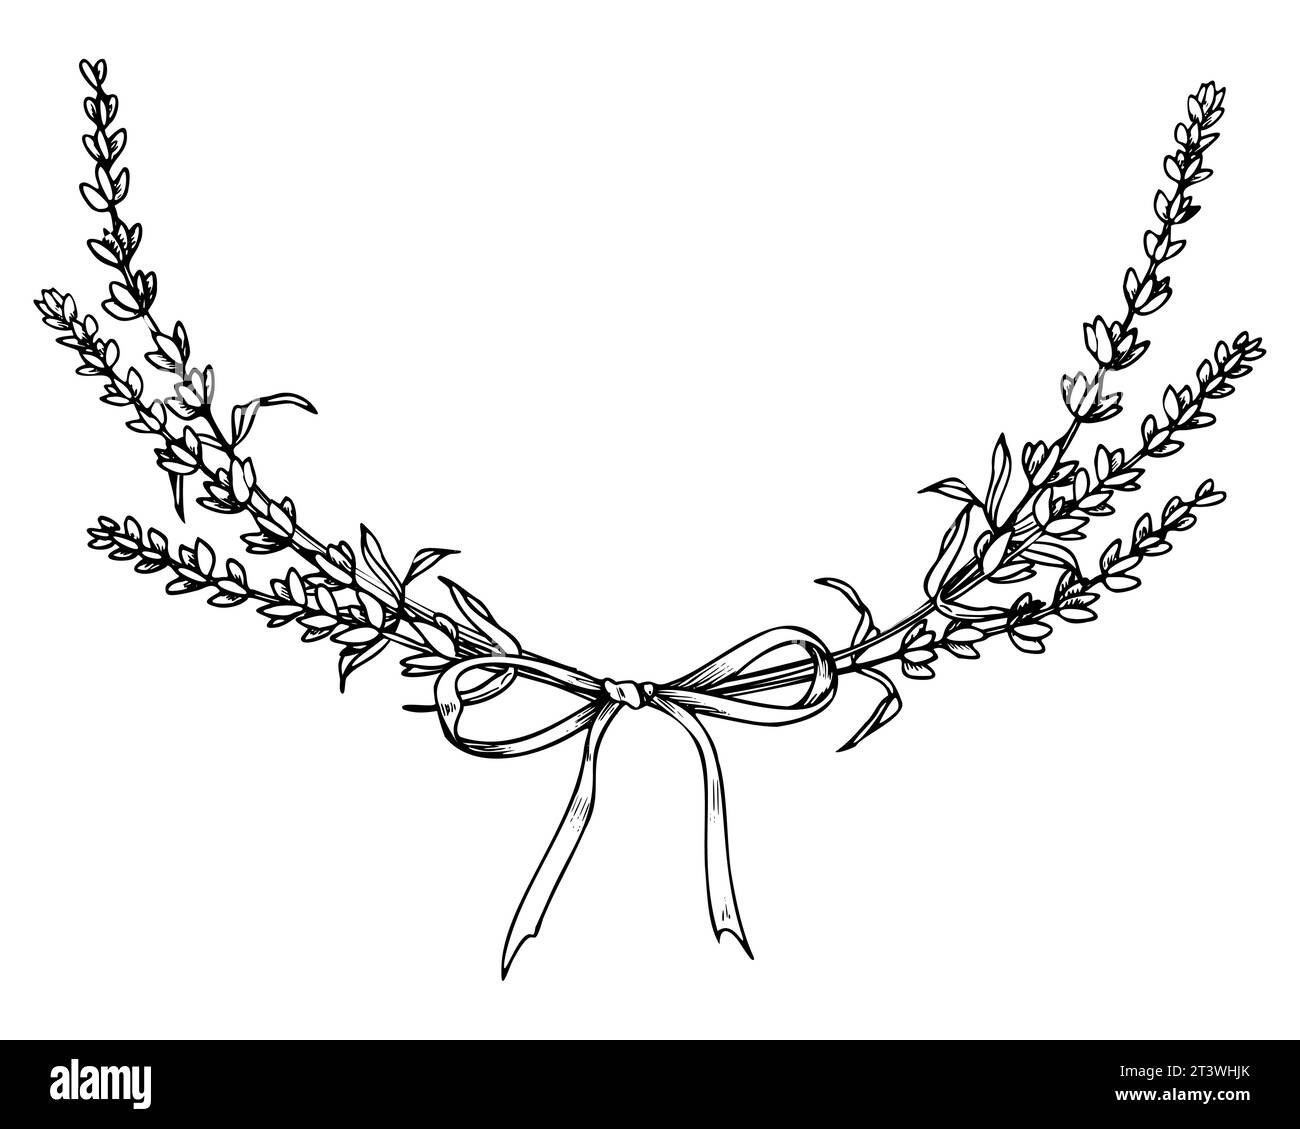 Lavender Wreath. Illustrazione lineare vettoriale disegnata a mano di una cornice floreale con nastro in bianco e nero per biglietti di auguri o inviti di nozze. Modello inciso per cartoline o logo. Illustrazione Vettoriale